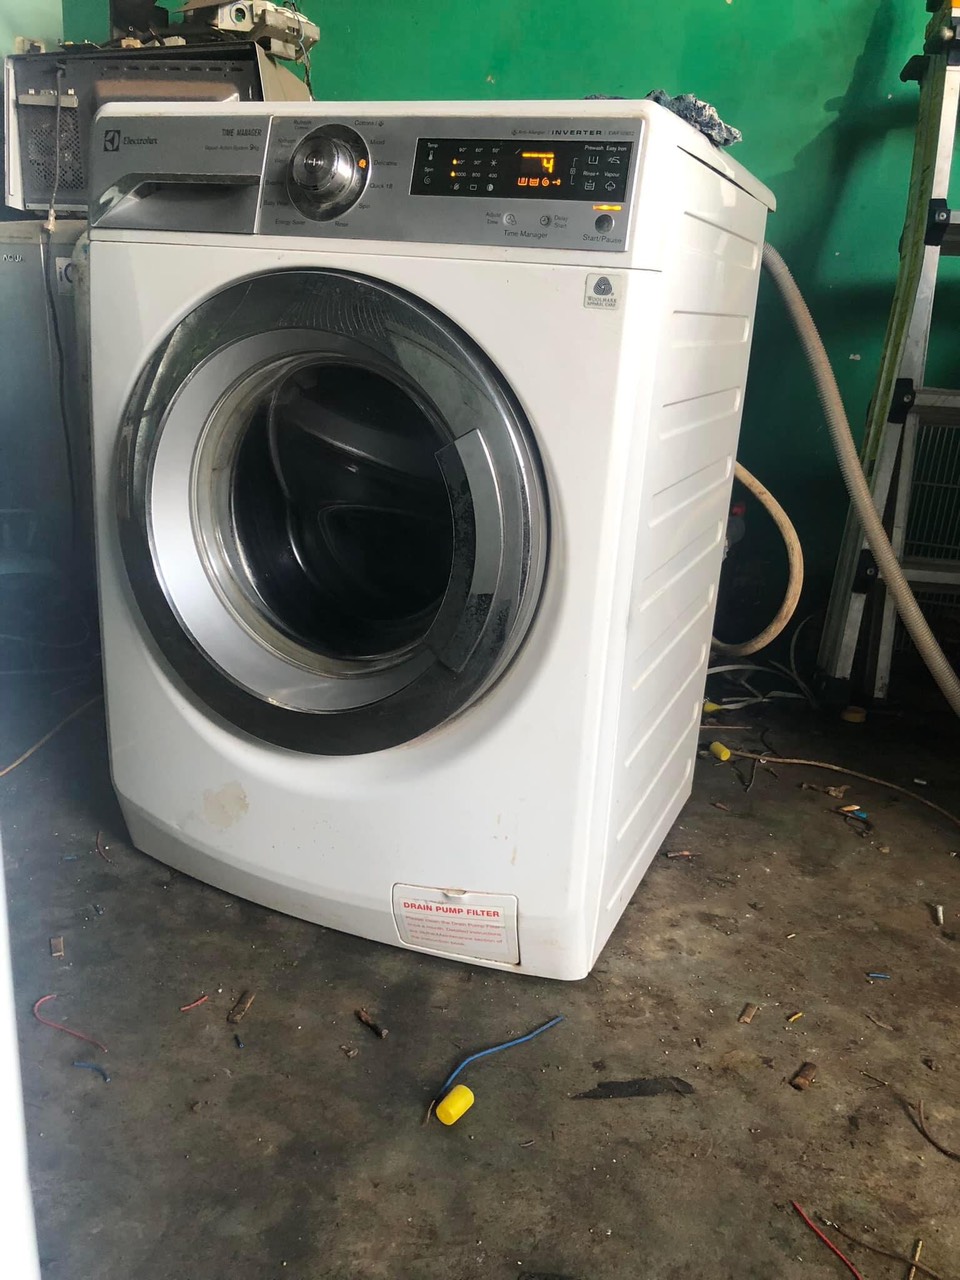 Bảng giá sửa máy giặt tại nhà của Sửa máy giặt quần áo Phường 8 Gò Vấp được niêm yết trên website công ty, rõ ràng, cạnh tranh trên thị trường